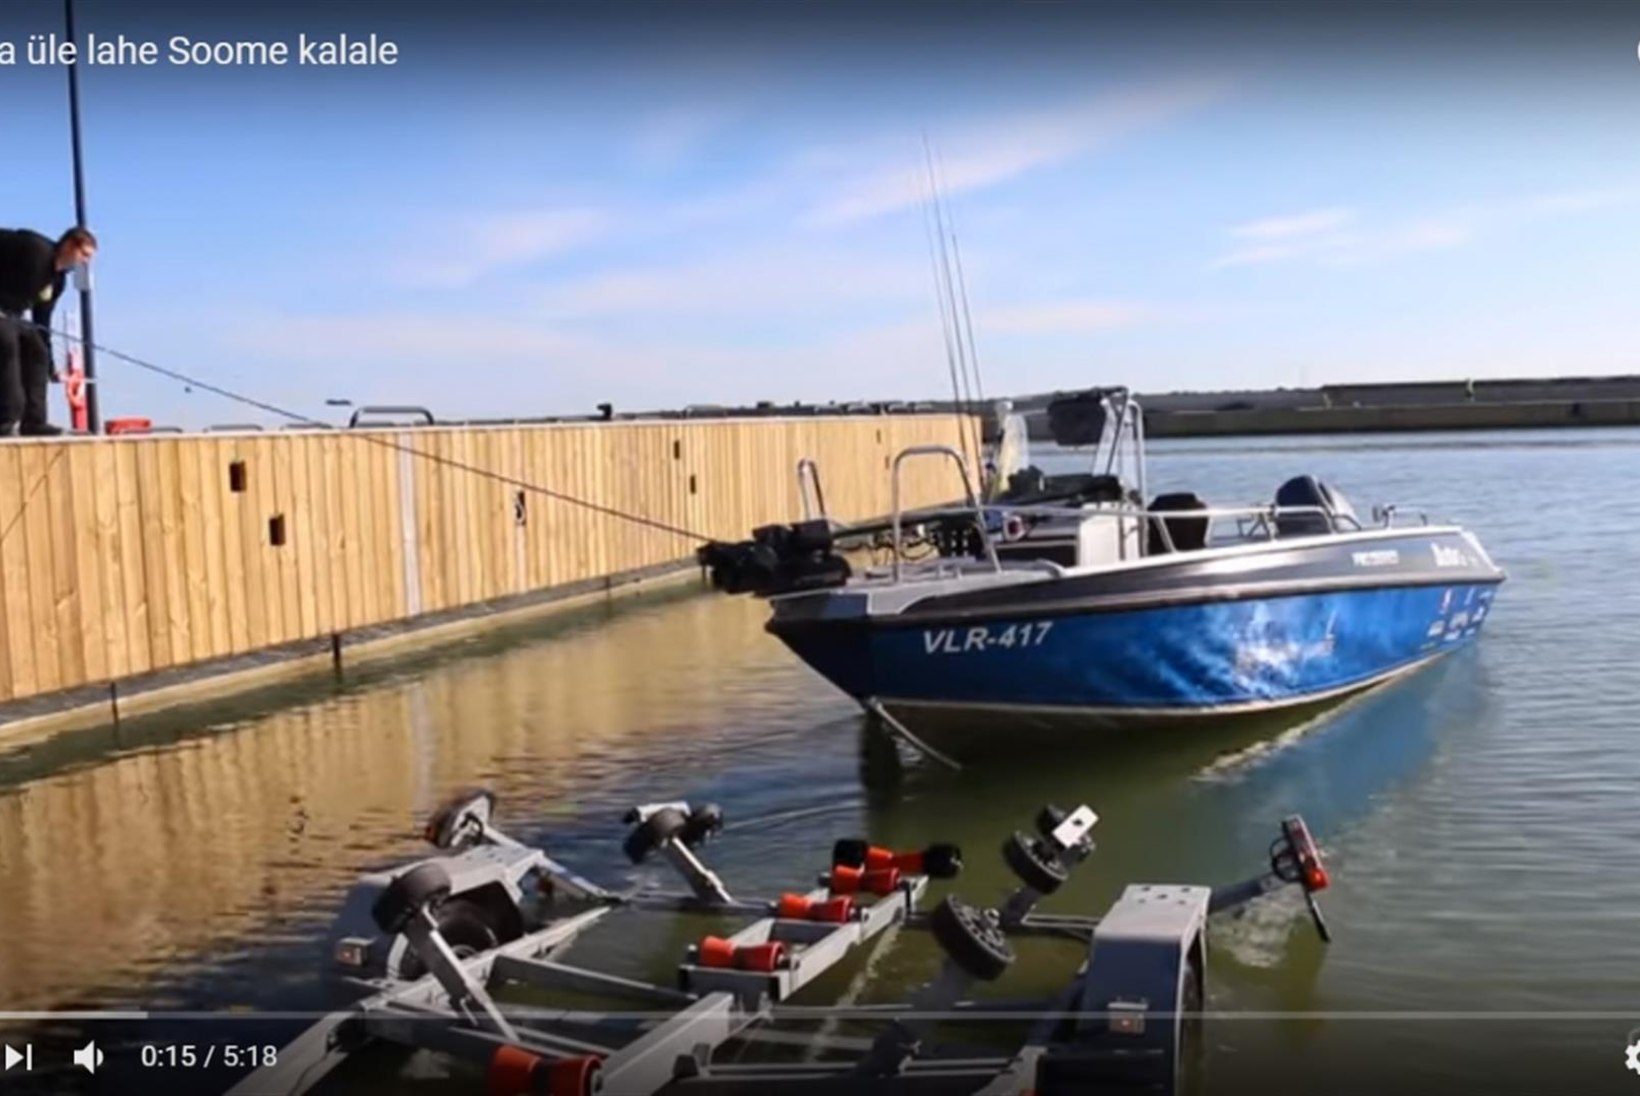 VIDEO: Kaatriga üle lahe kalale